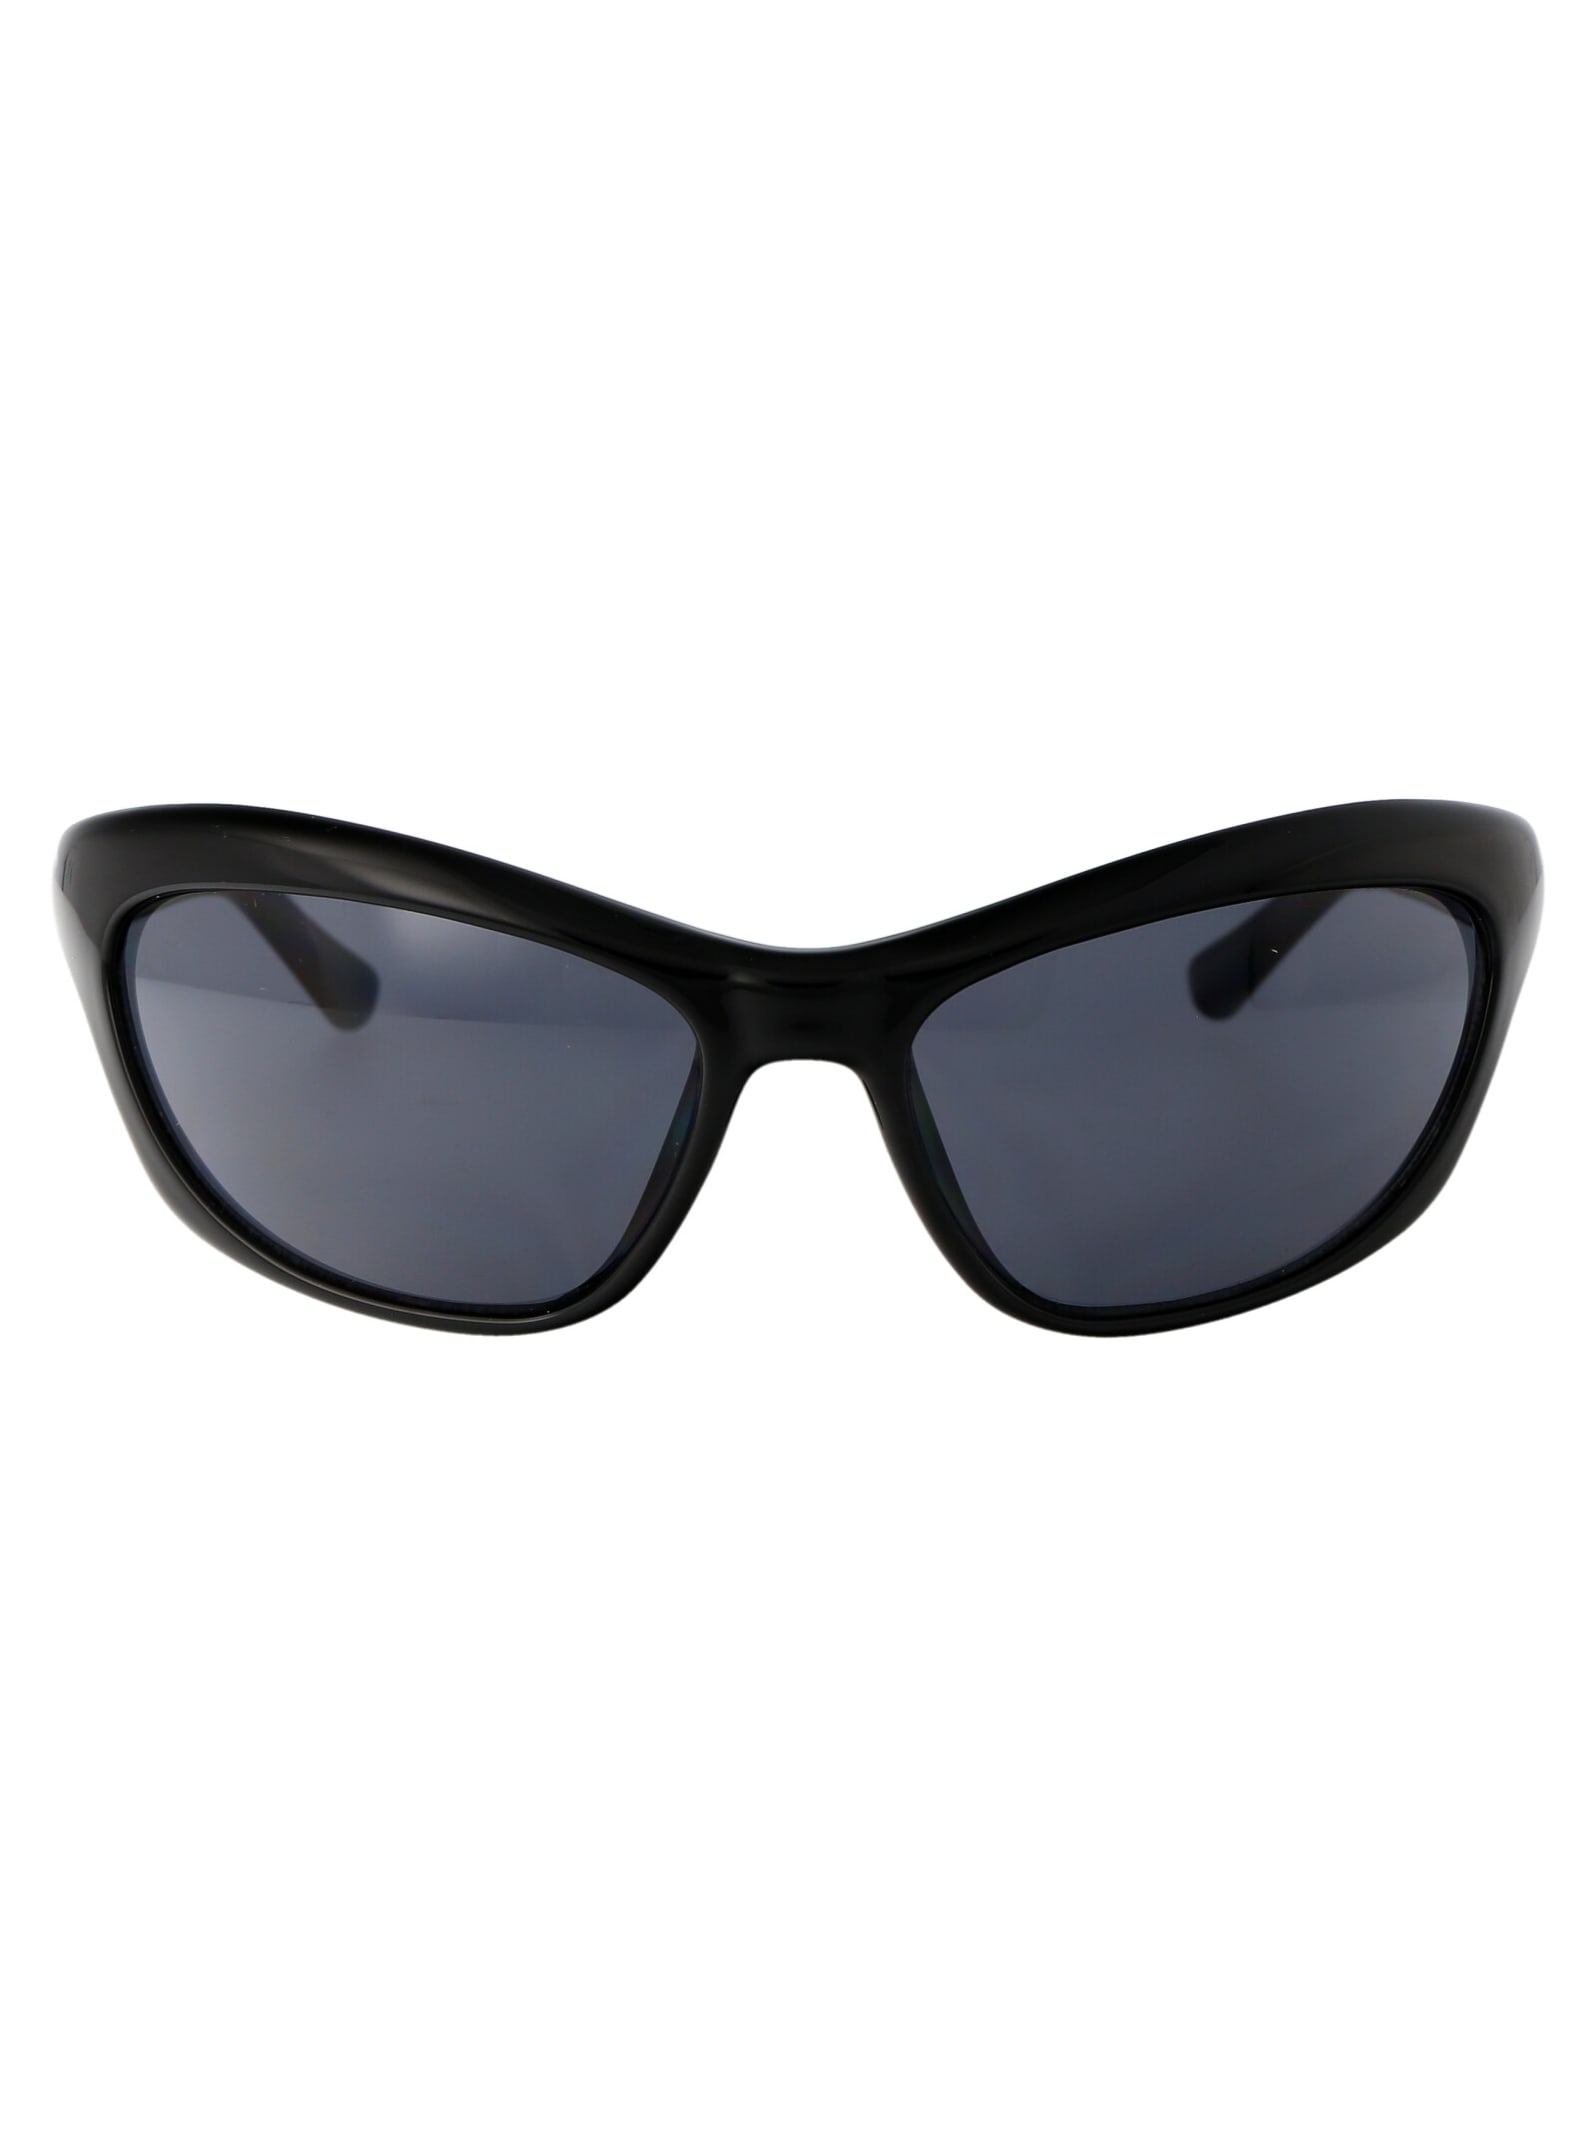 Cf 7030/s Sunglasses